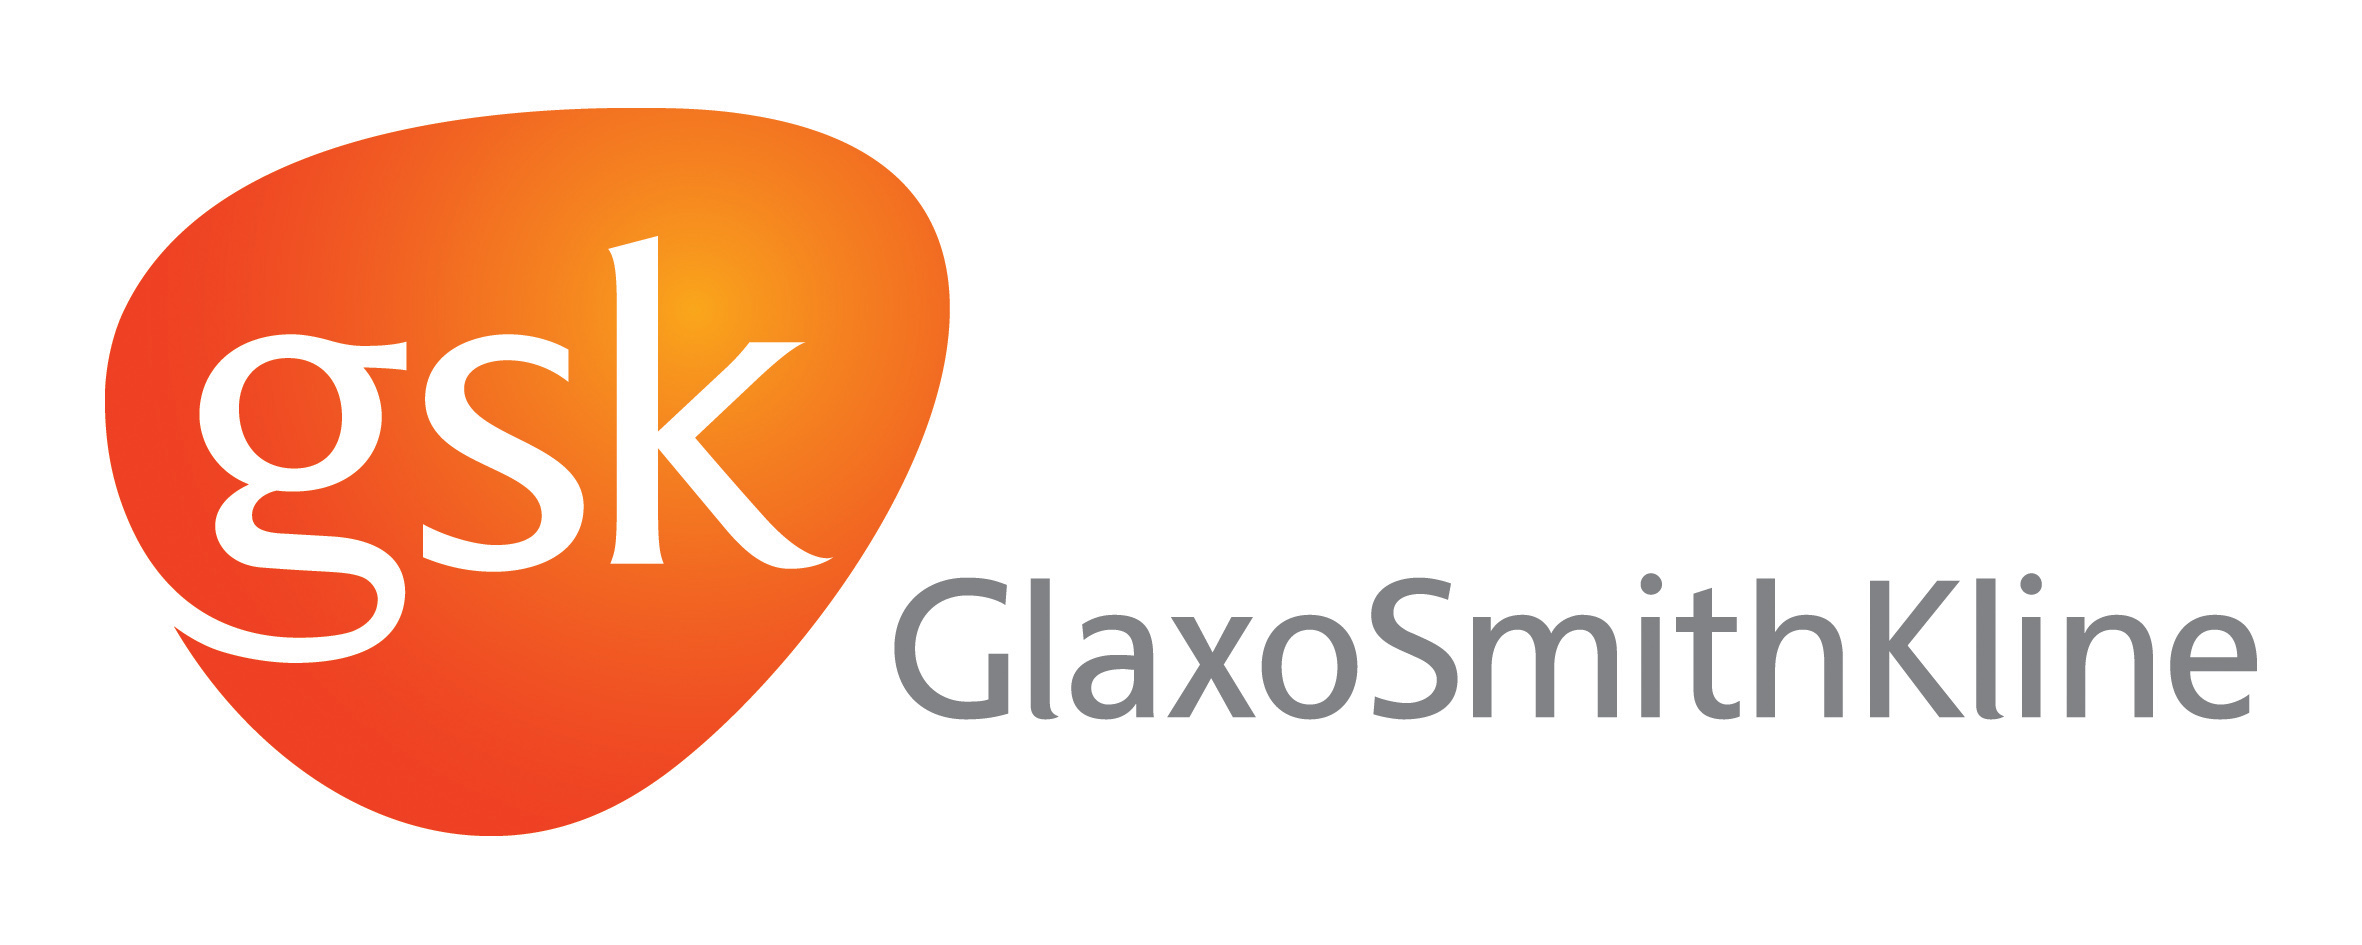 glaxosmithkline plc company profile - corporate watch